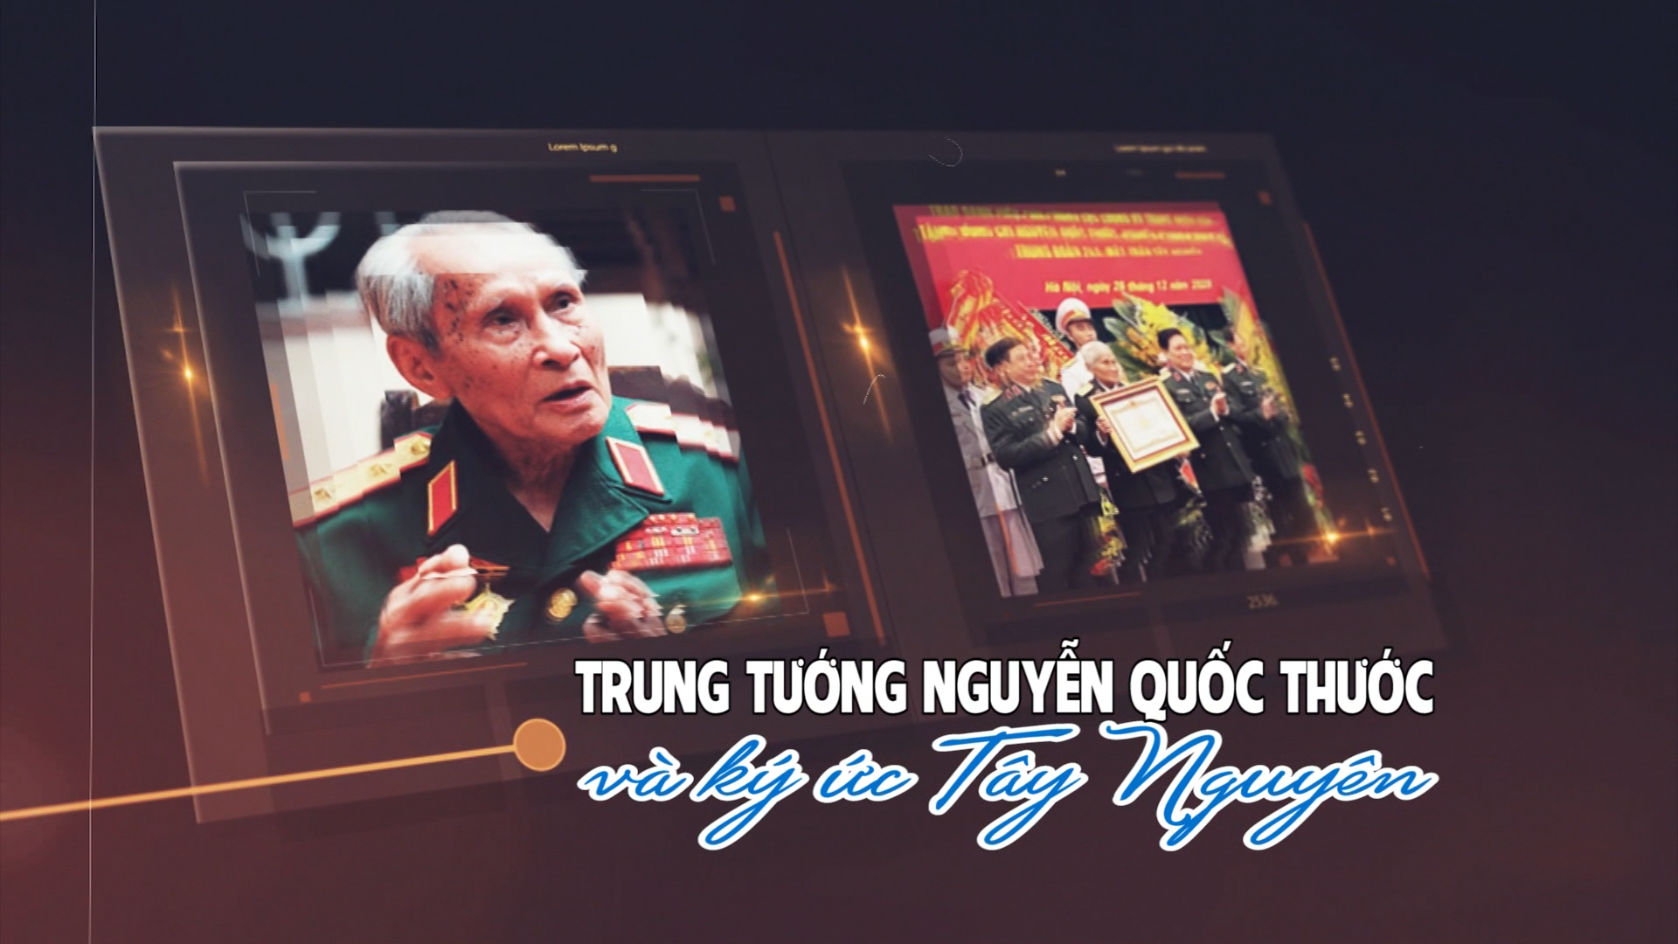 Trò chuyện cuối tuần: Trung tướng Nguyễn Quốc Thước và Ký ức Tây Nguyên